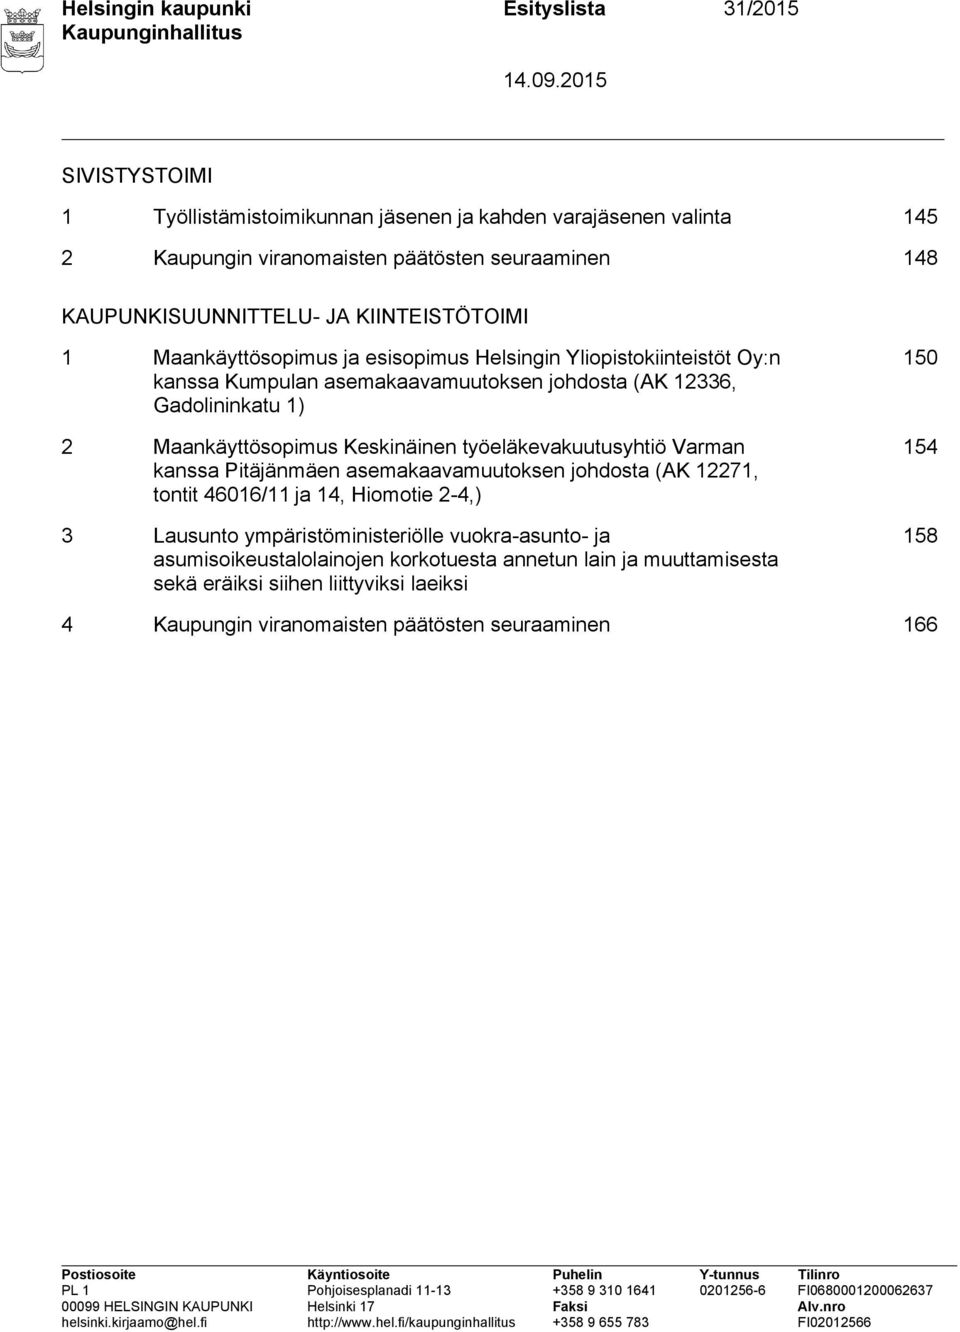 2 Maankäyttösopimus Keskinäinen työeläkevakuutusyhtiö Varman kanssa Pitäjänmäen asemakaavamuutoksen johdosta (AK 12271, tontit 46016/11 ja 14, Hiomotie 2-4,) 3 Lausunto